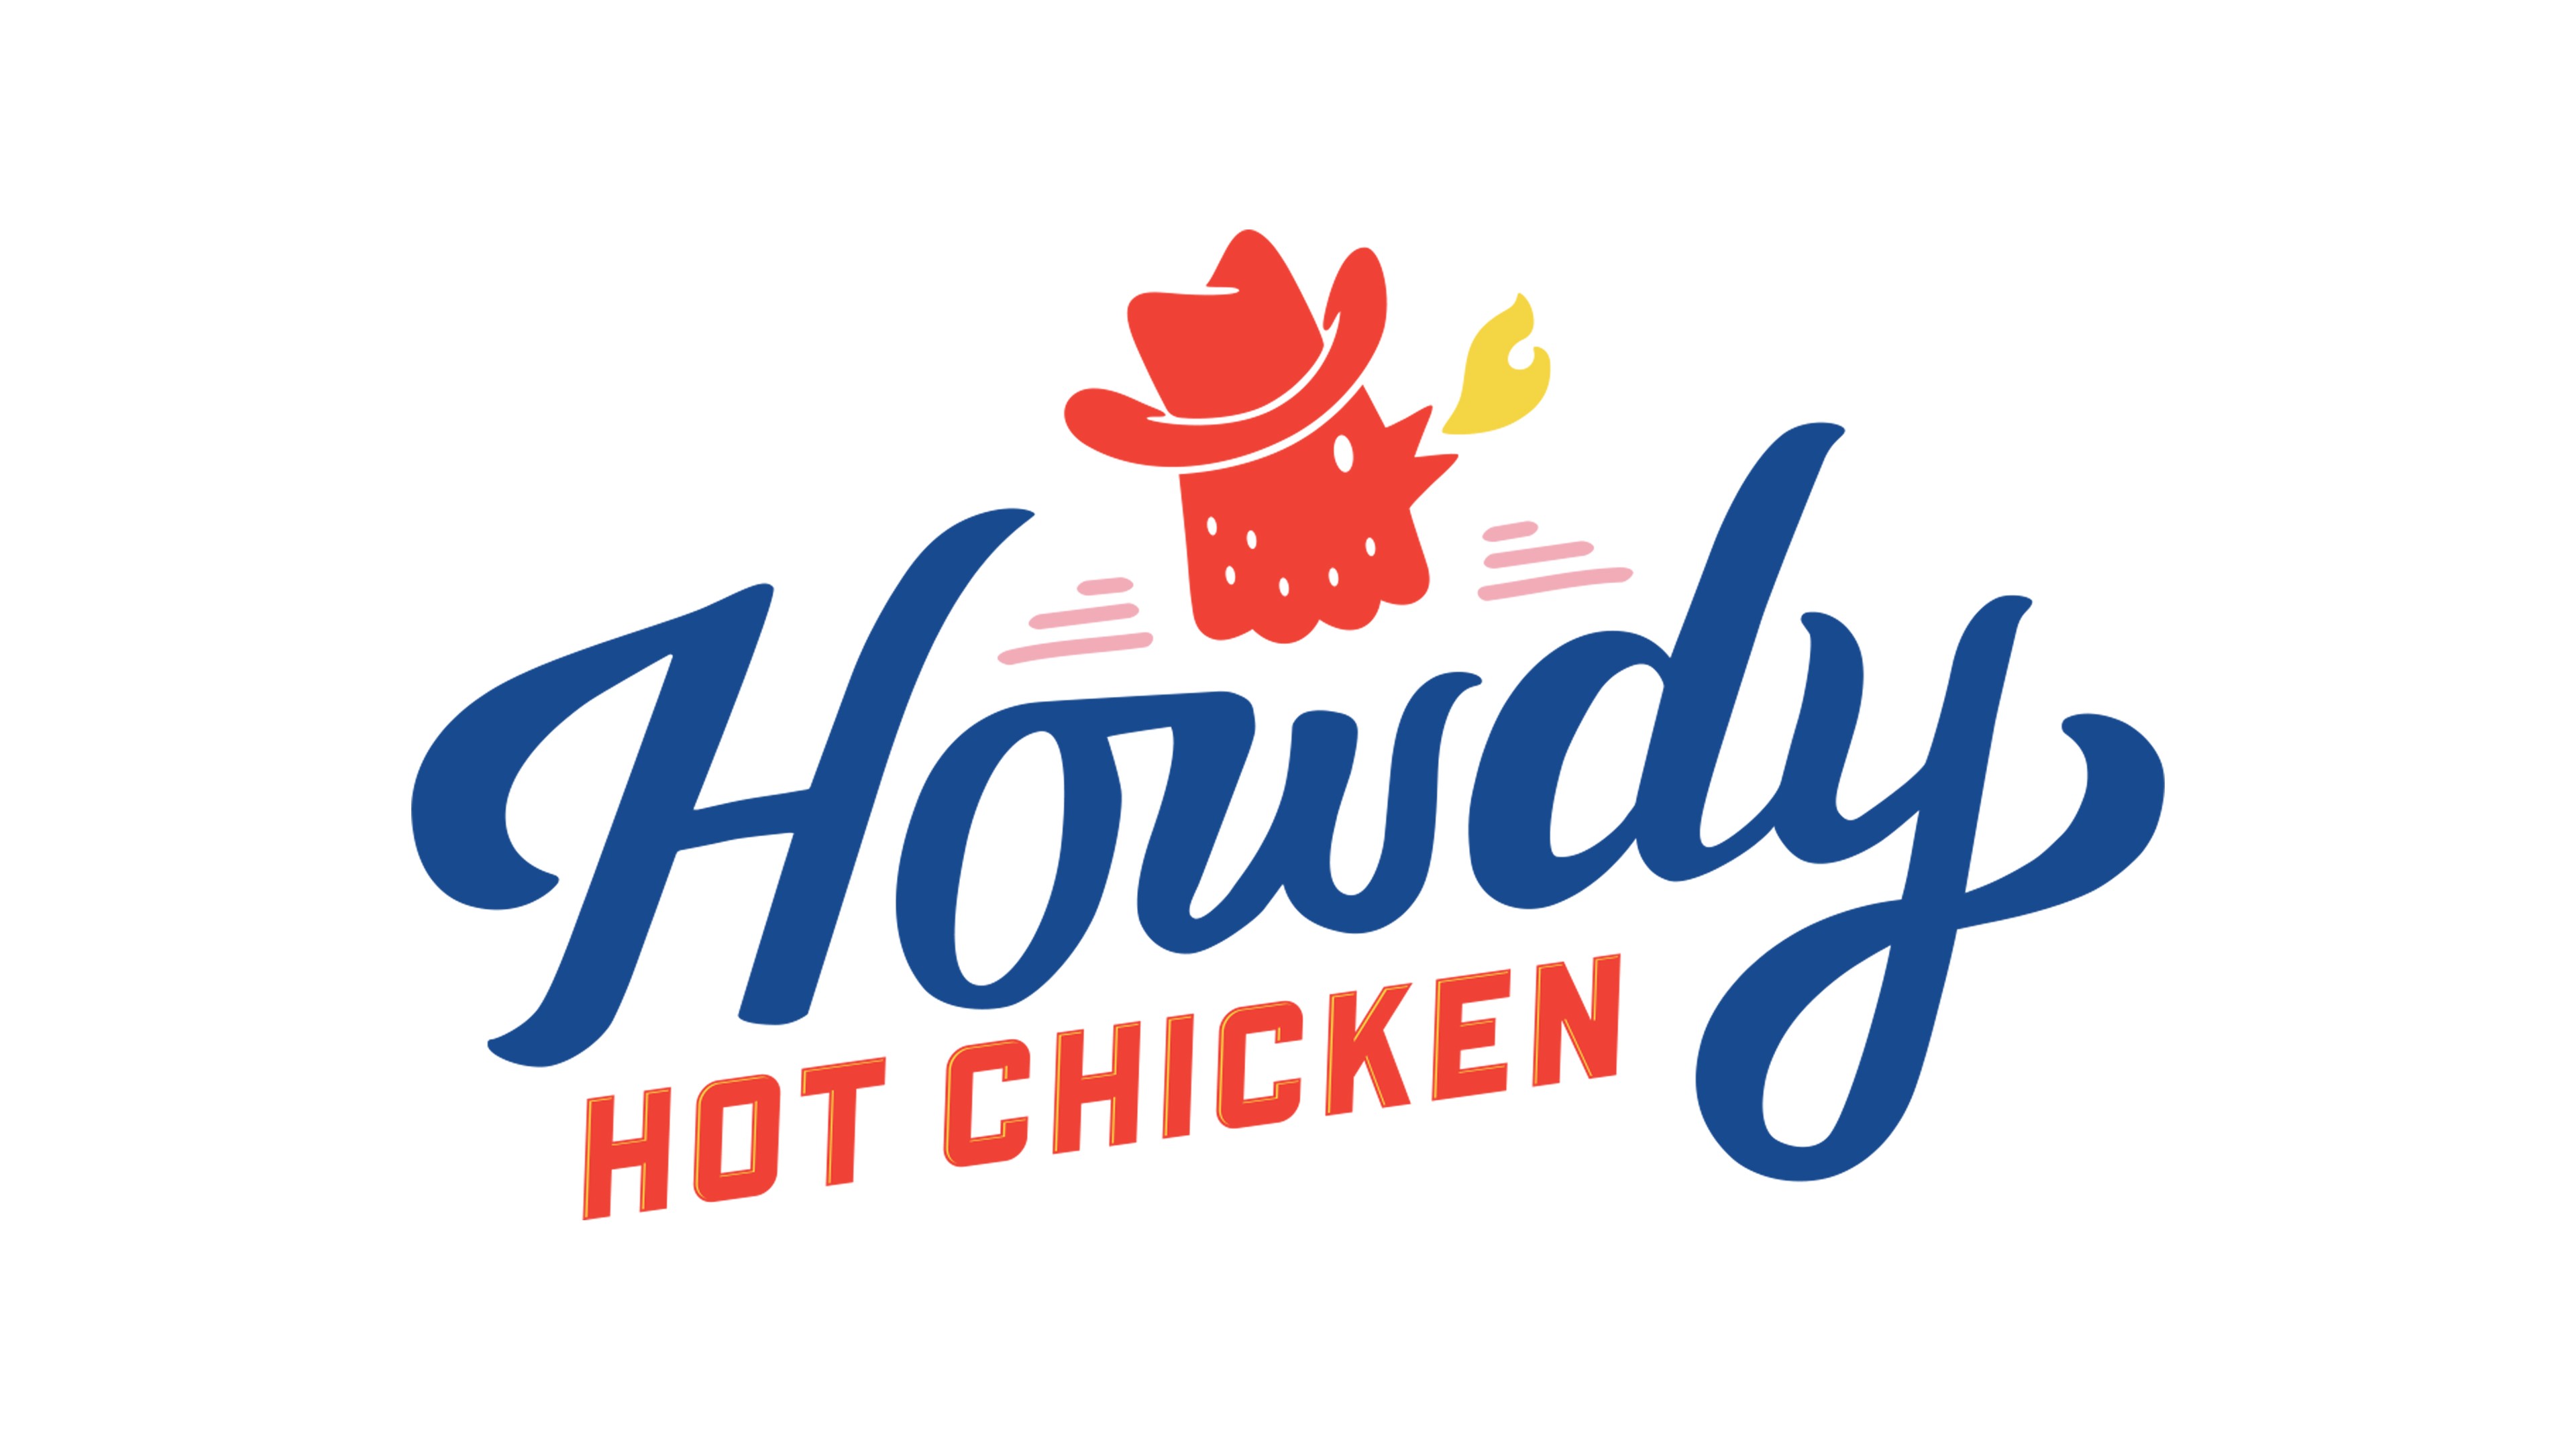 Howdy Hot Chicken